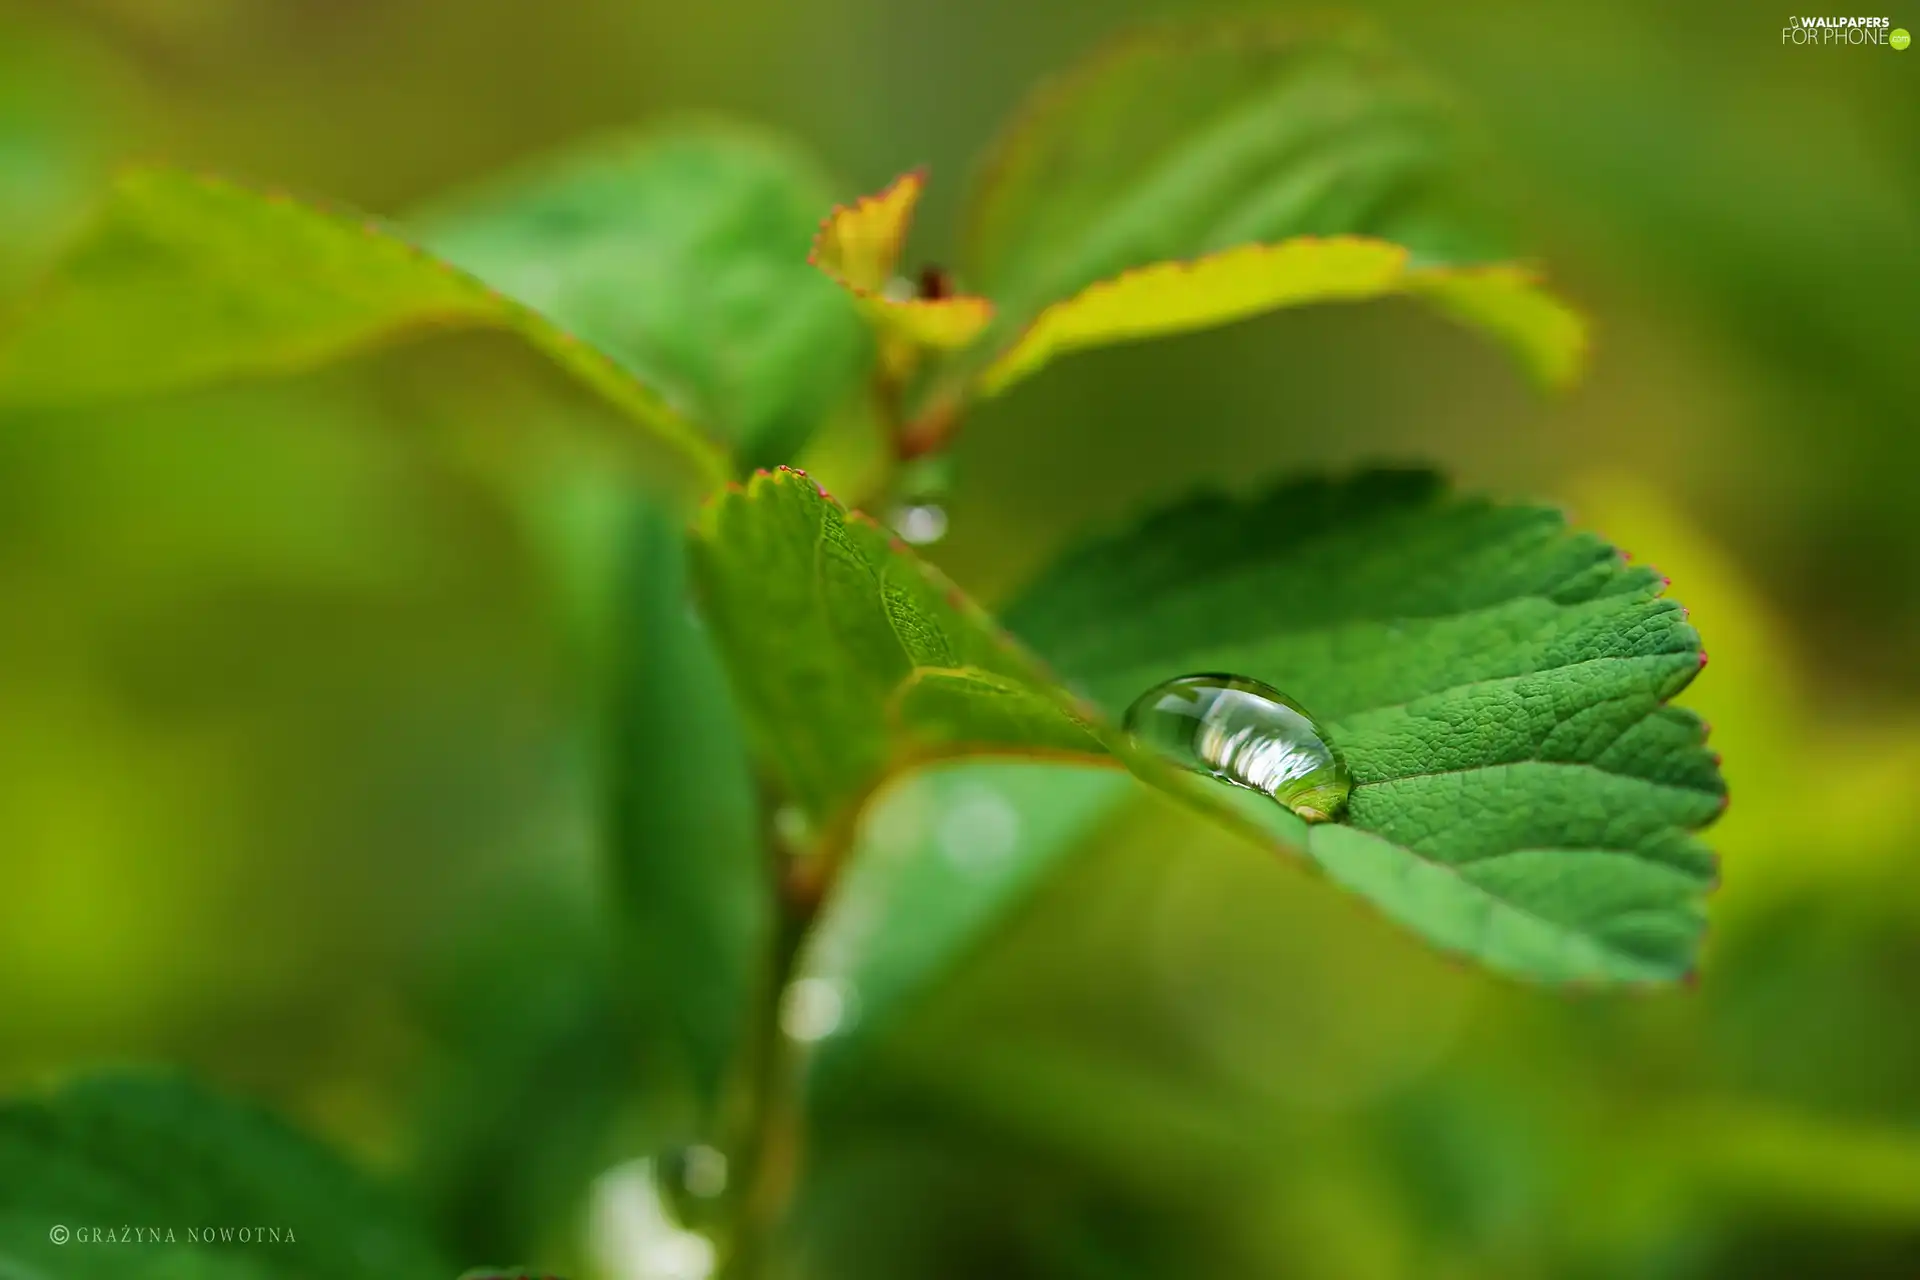 water, Leaf, drop